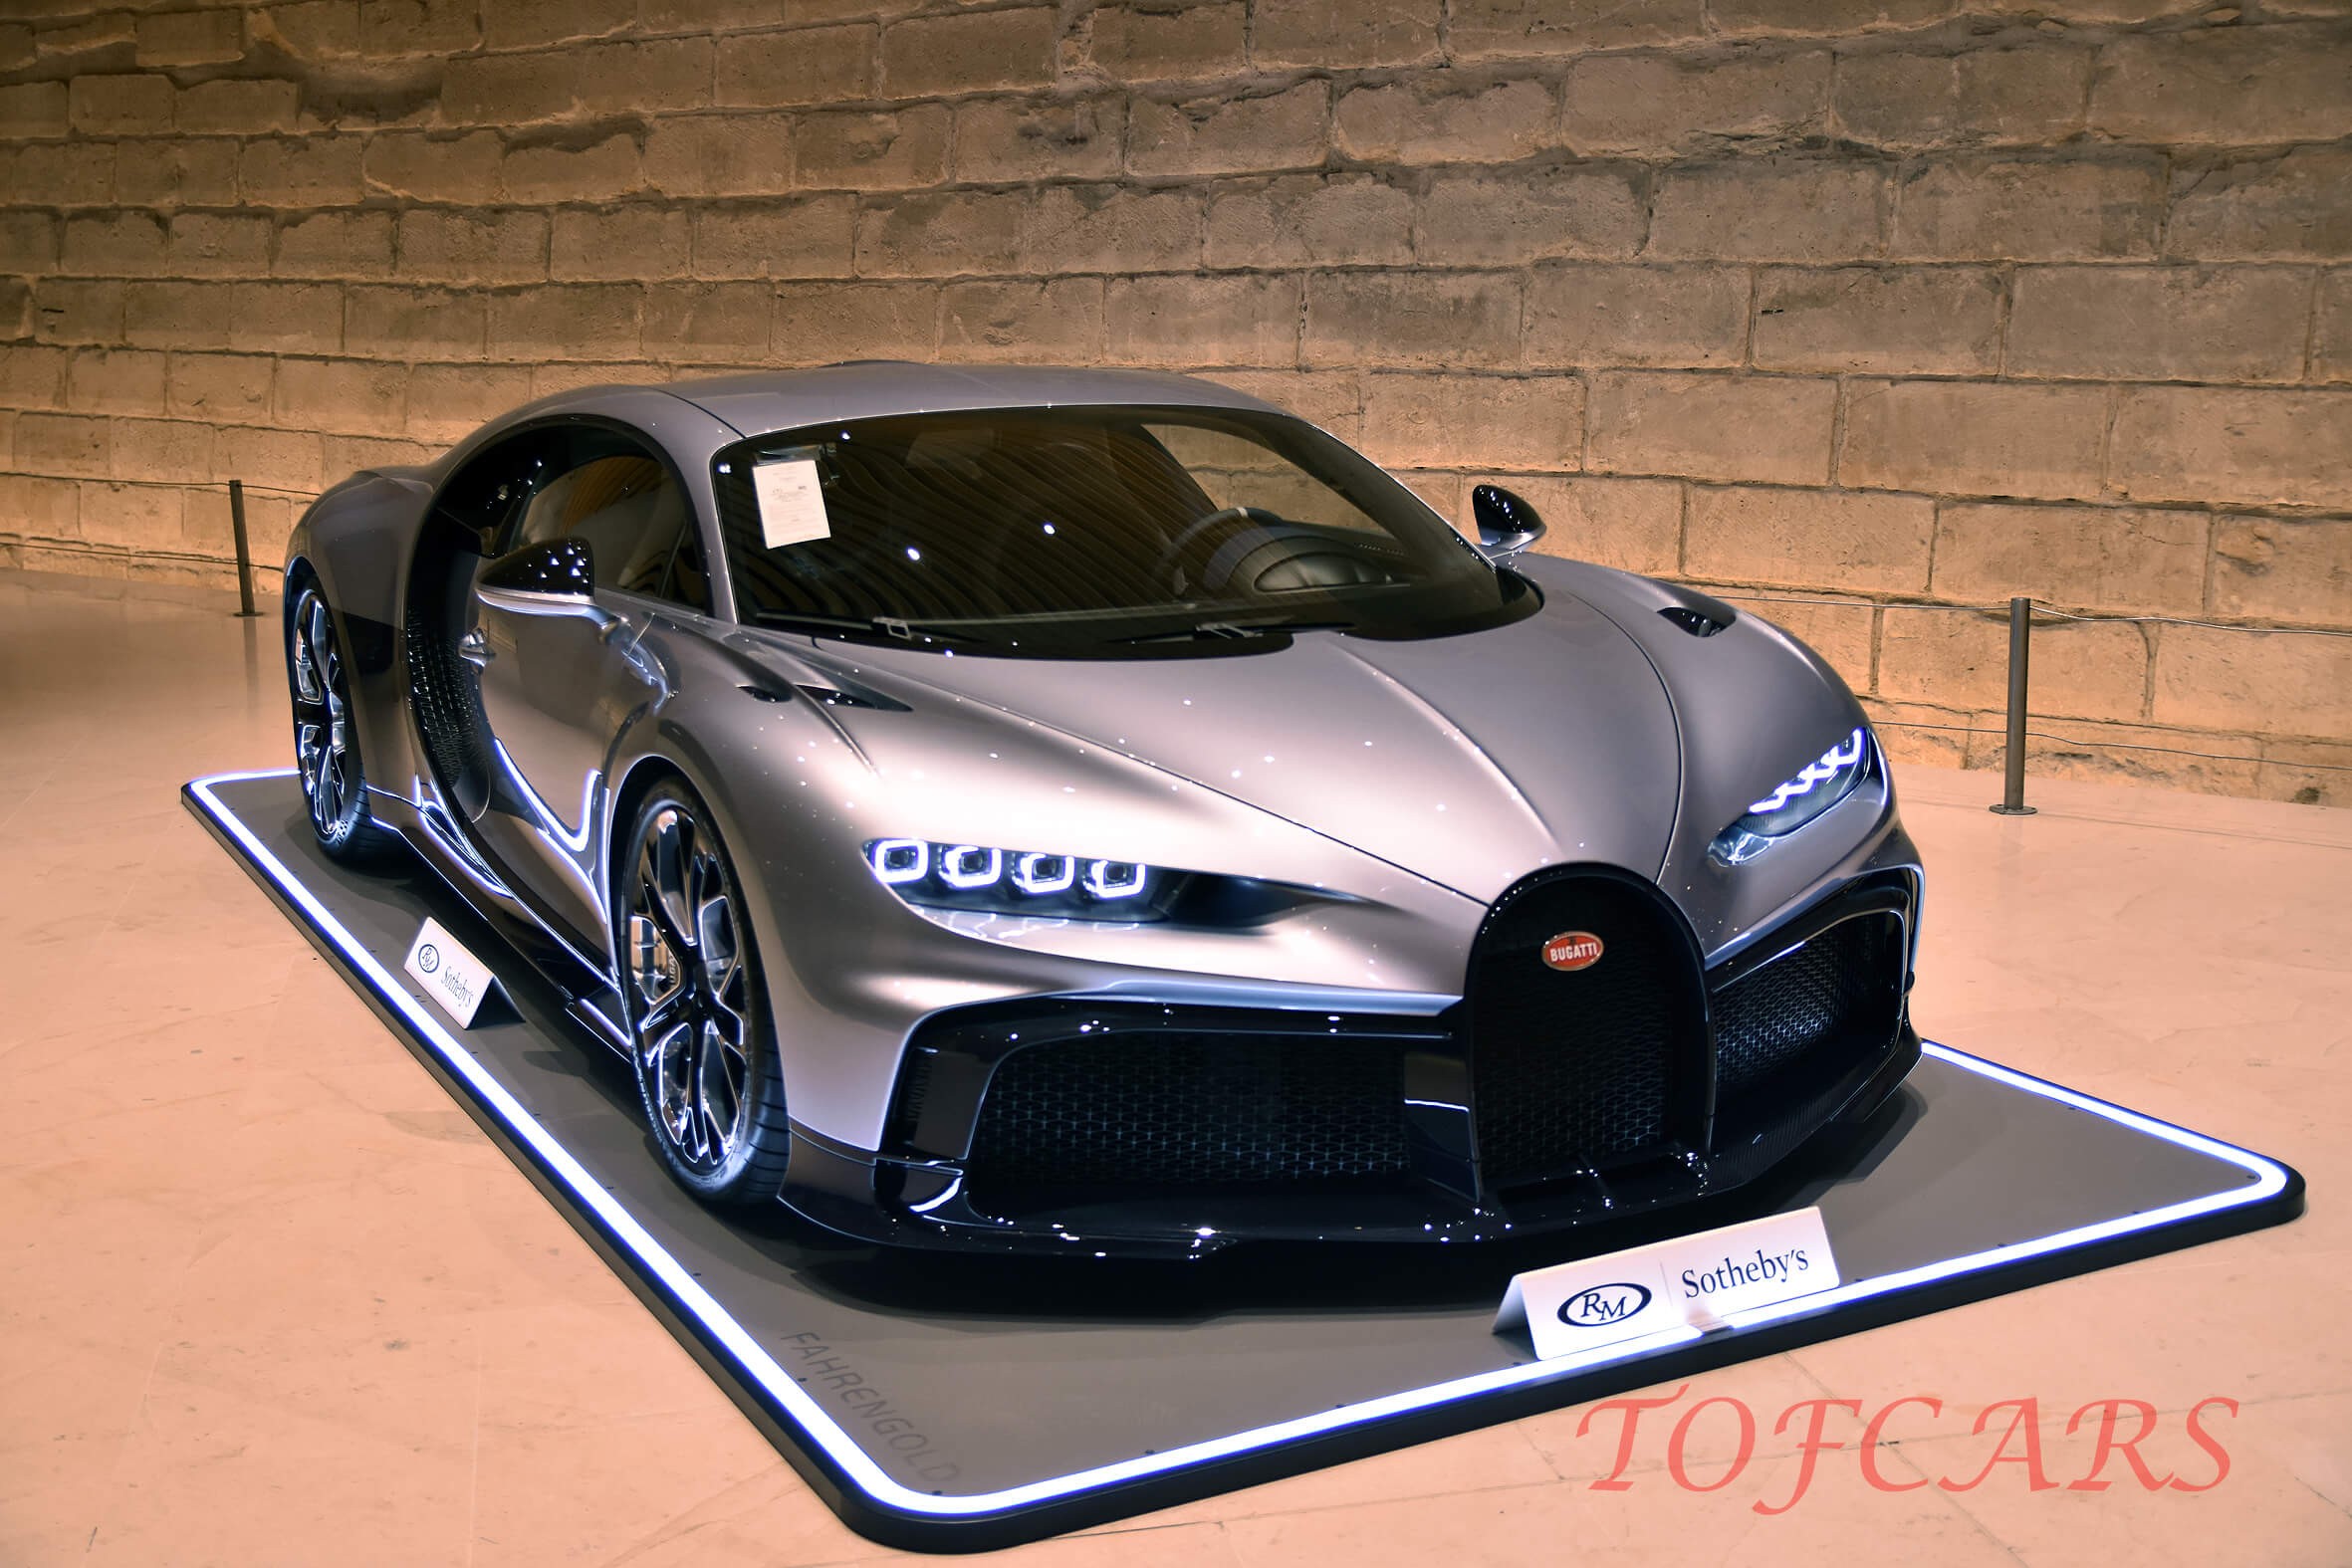 2022 Bugatti chiron profilee 2